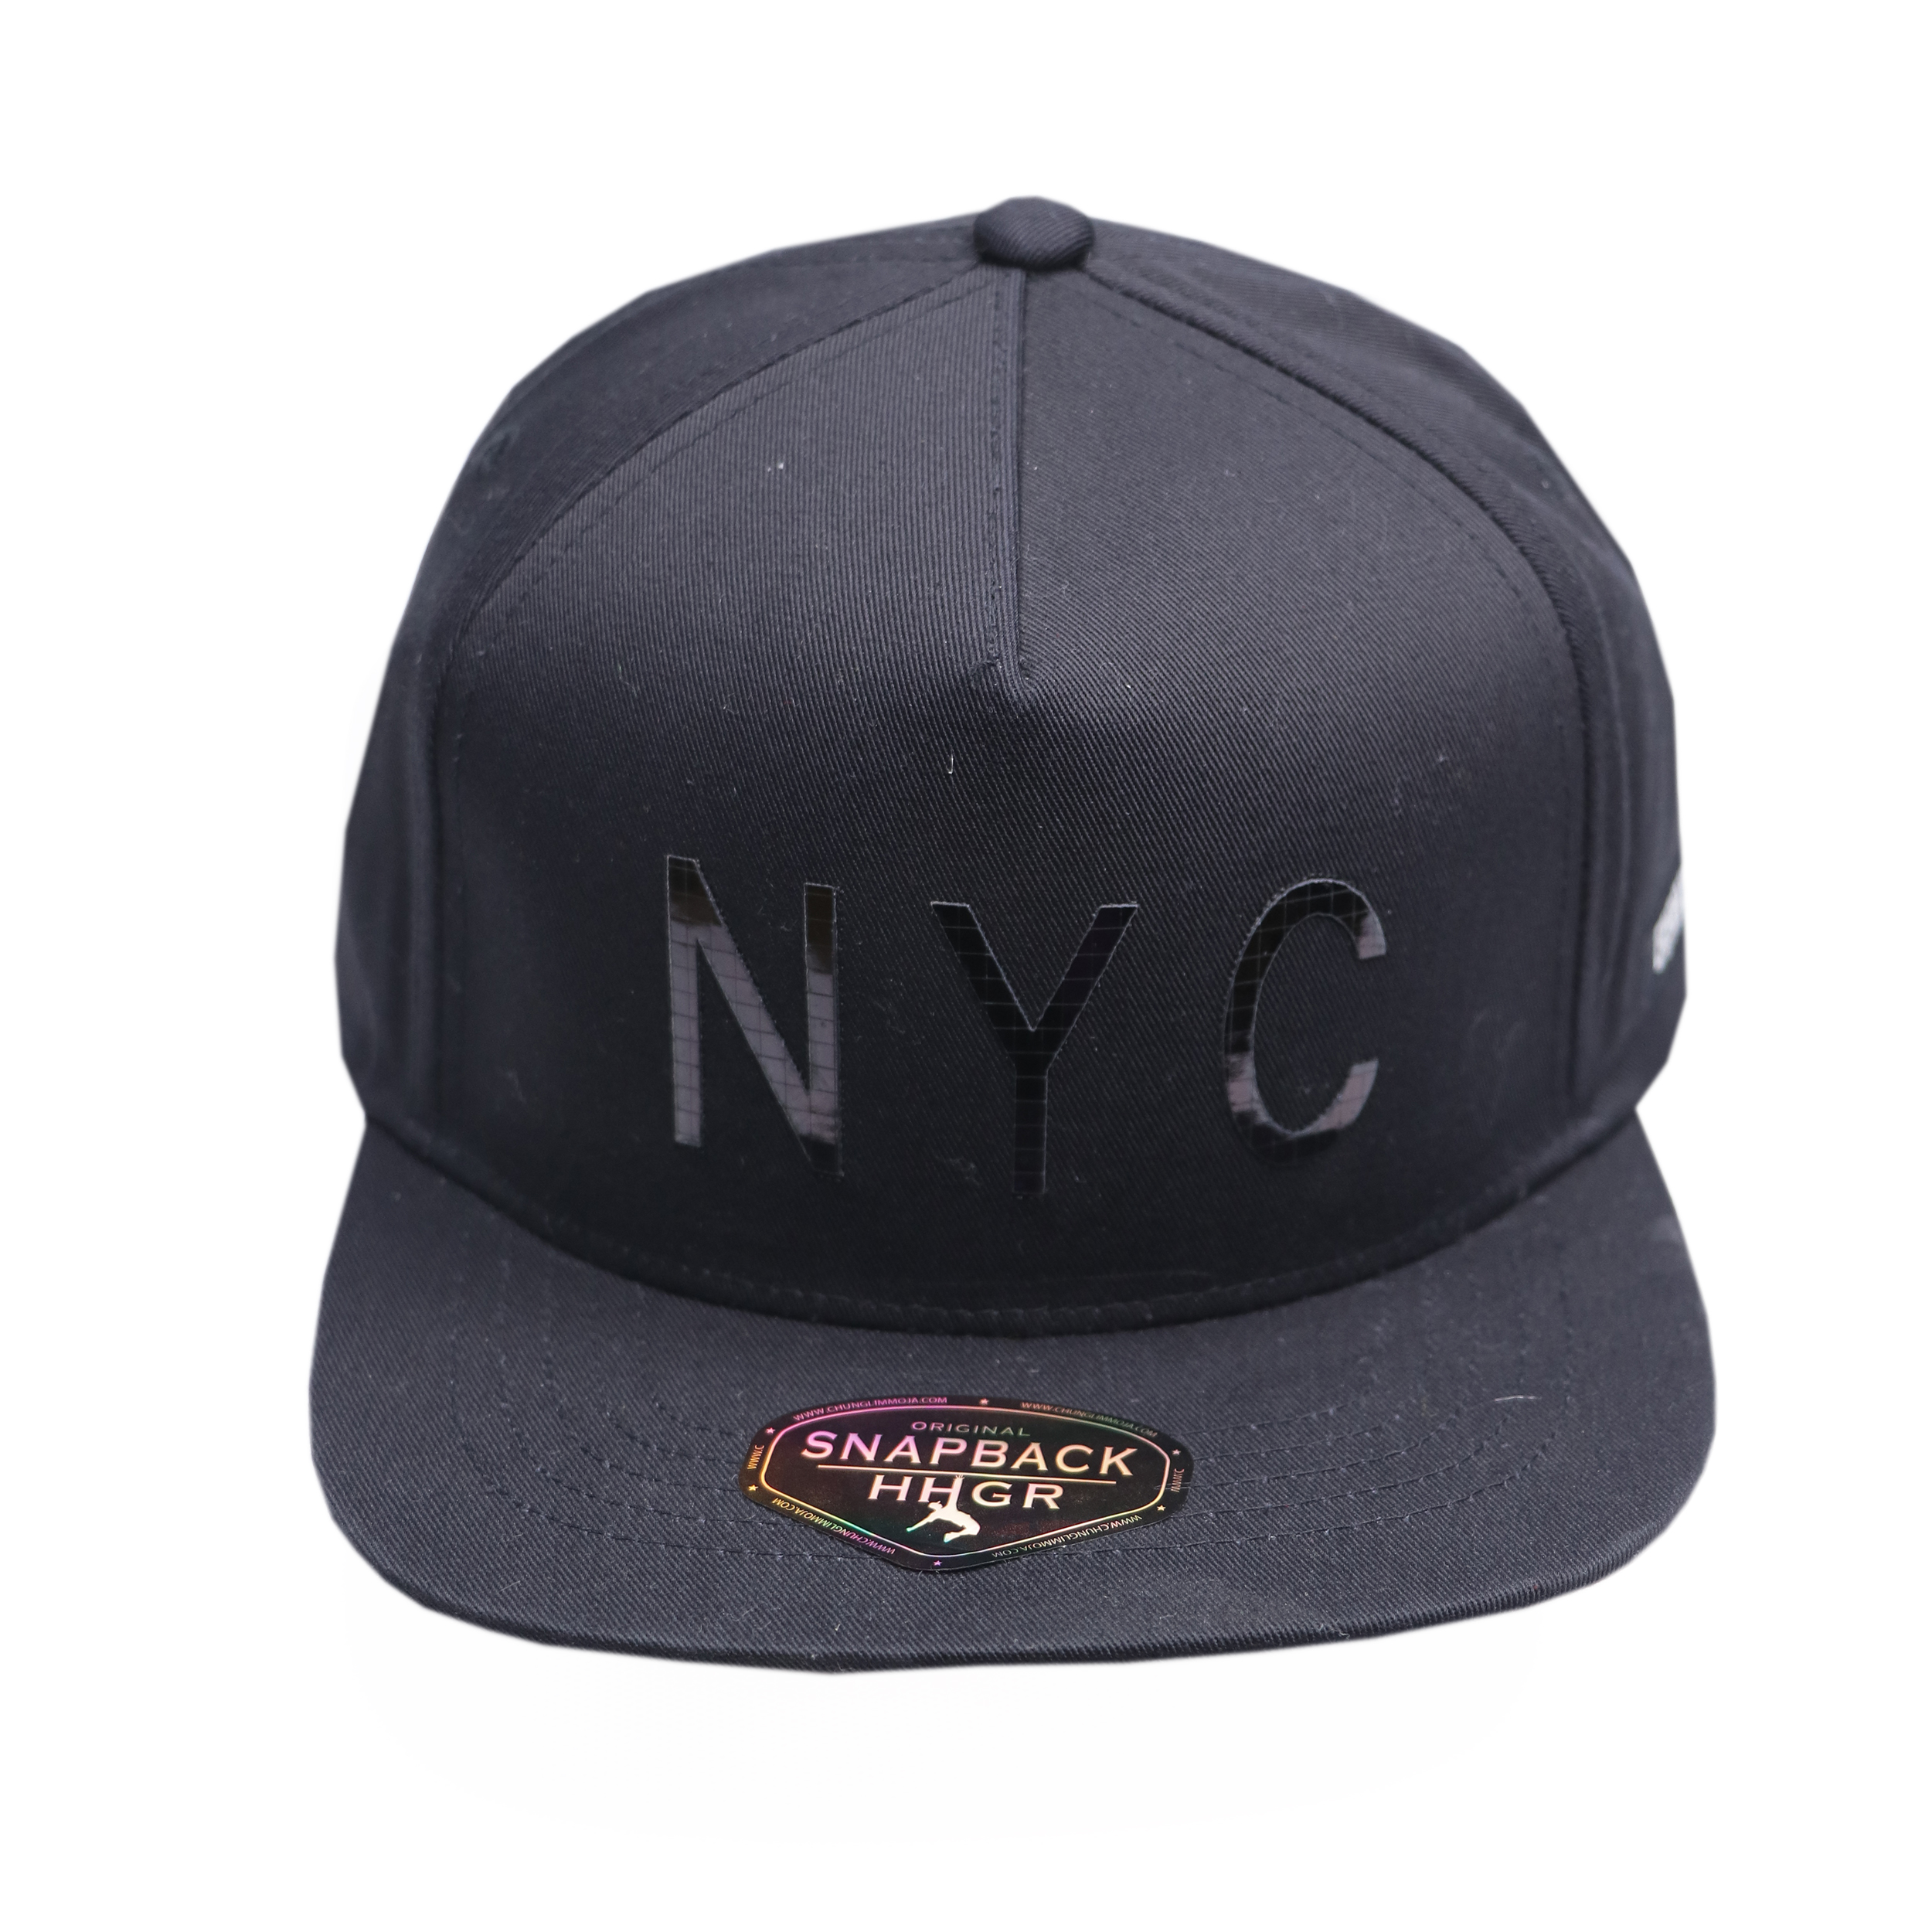 نکته خرید - قیمت روز کلاه کپ مدل nyc کد 001 خرید